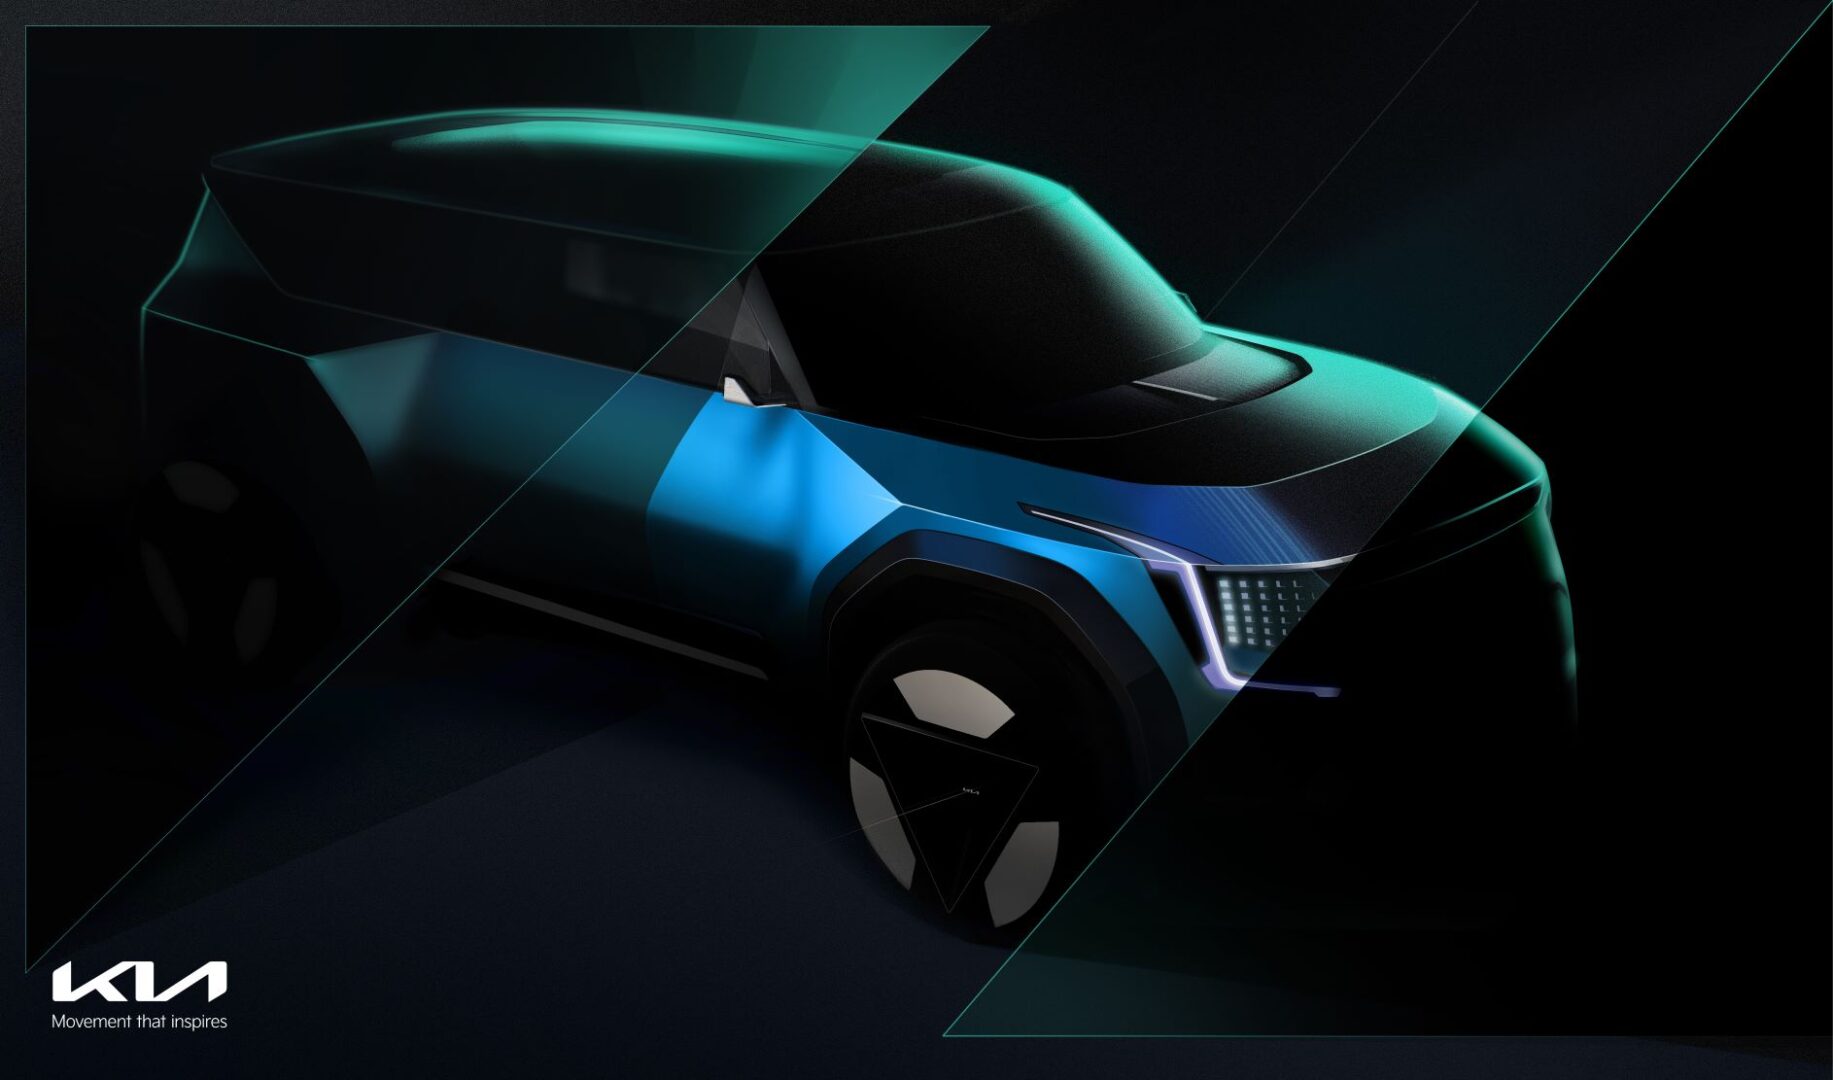 “كيا” تروّج لسيارتها الجديدة Concept EV9 التي تجسد رؤيتها كمزود لحلول التنقل المستدام